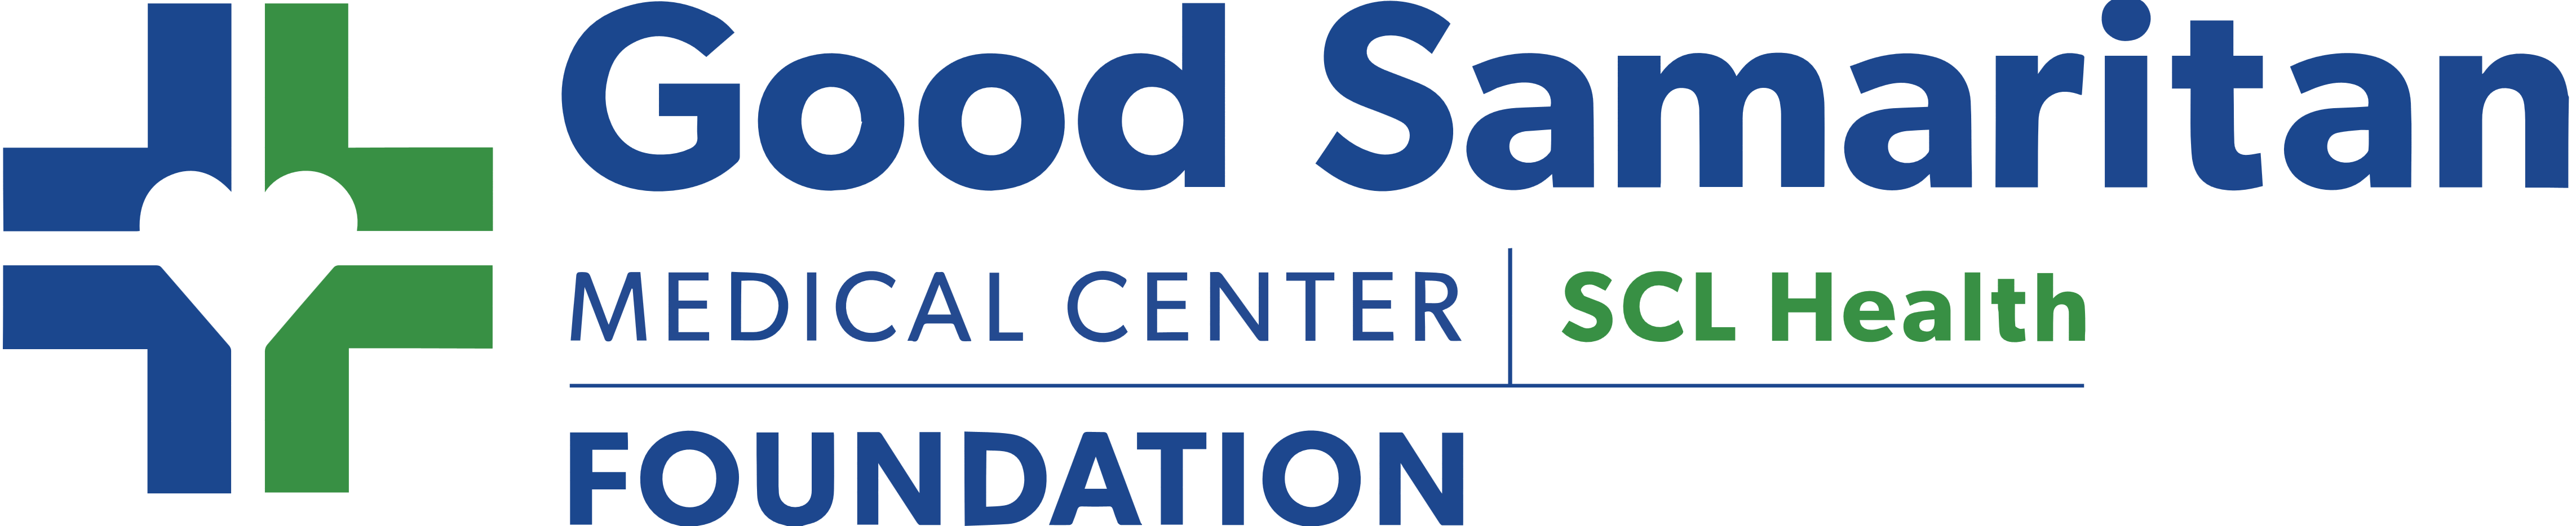 good samaritan hospital logo